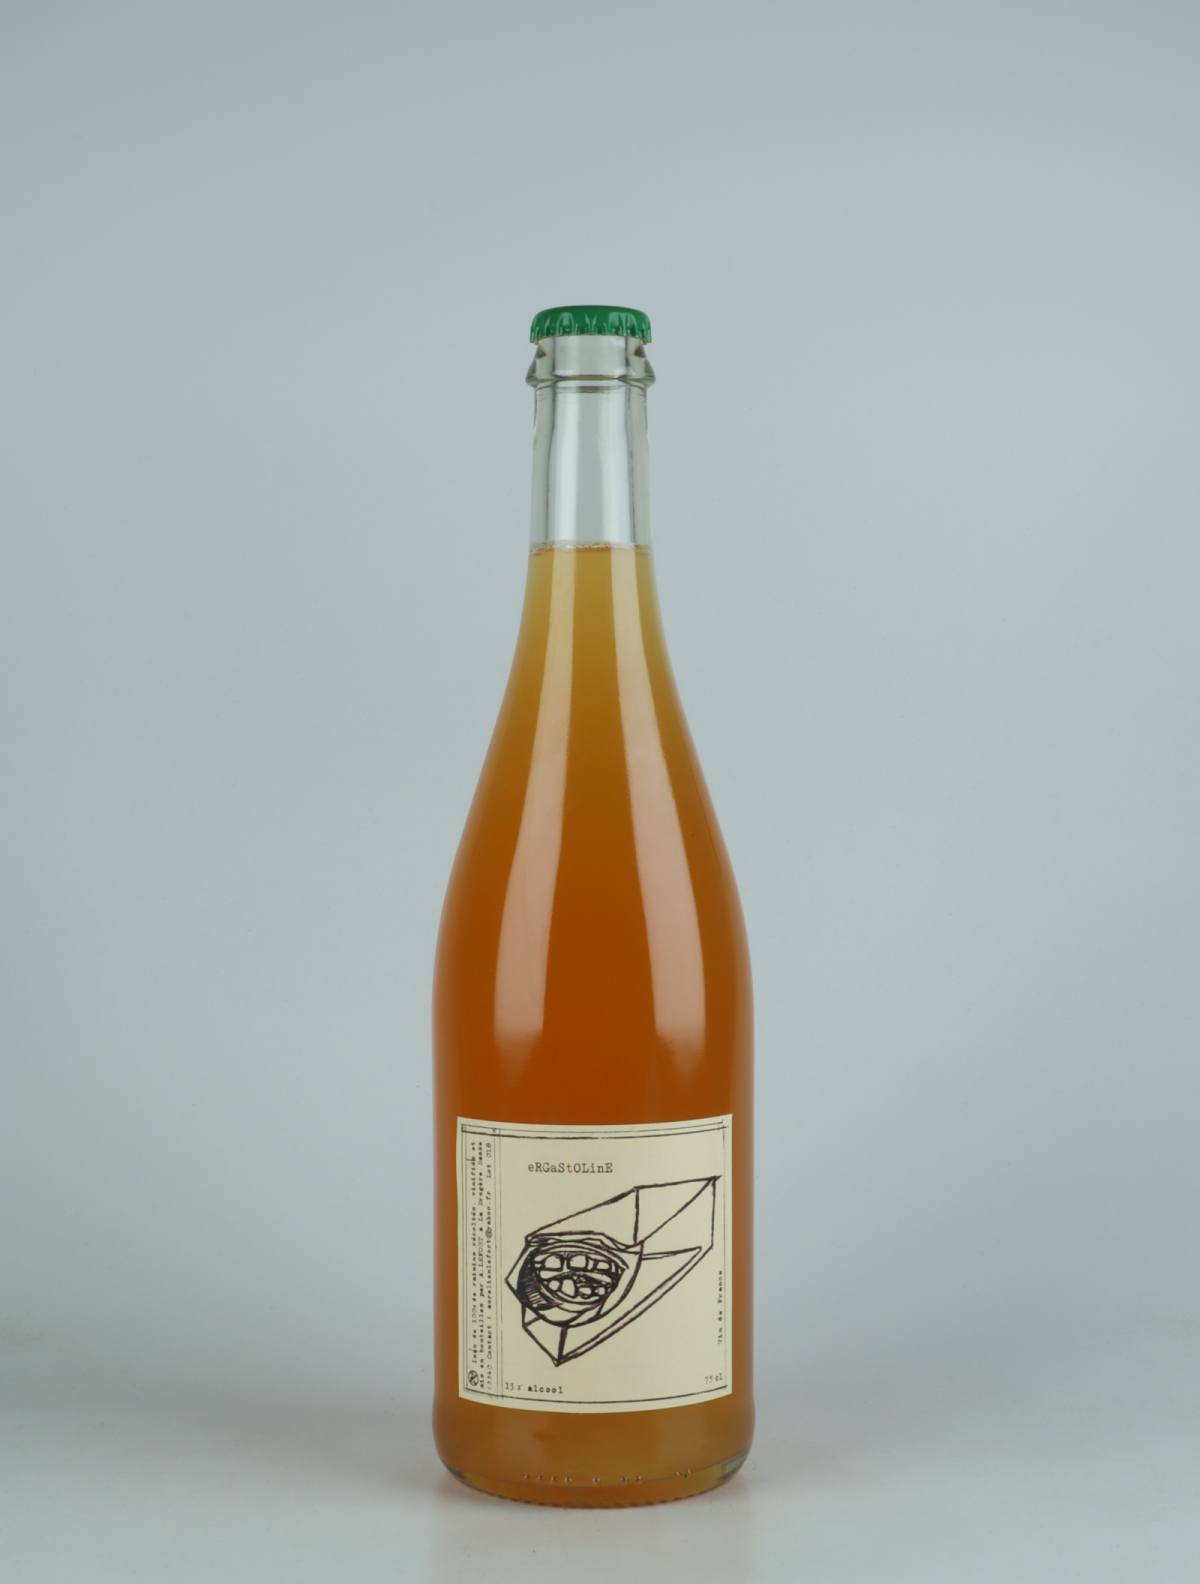 En flaske 2018 Ergastoline Orange vin fra Aurélien Lefort, Auvergne i Frankrig